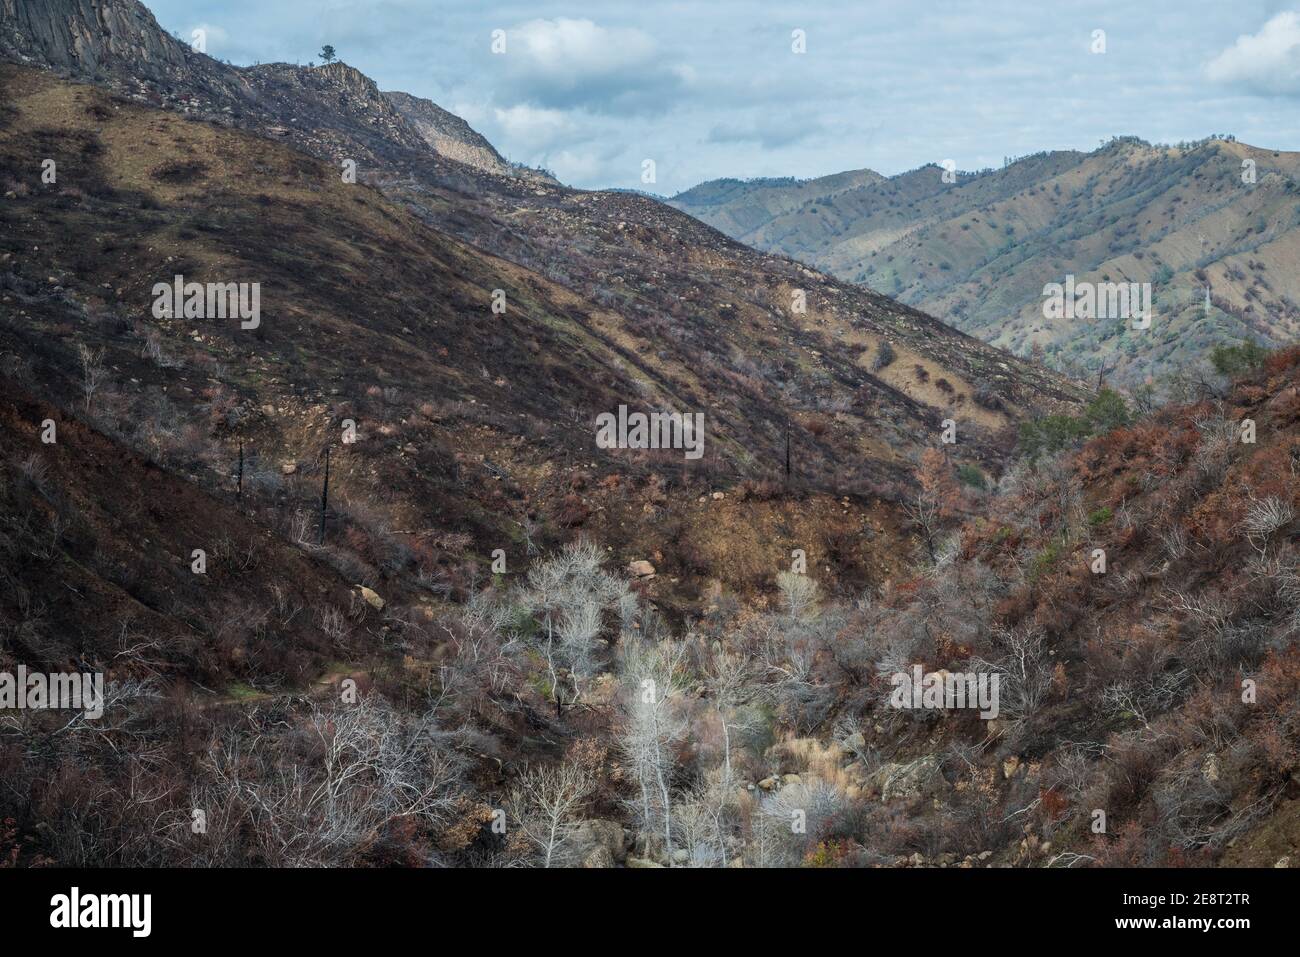 Le paysage est brûlé et désolé après les feux balayés à travers la nature sauvage dans le nord de la Californie. Banque D'Images